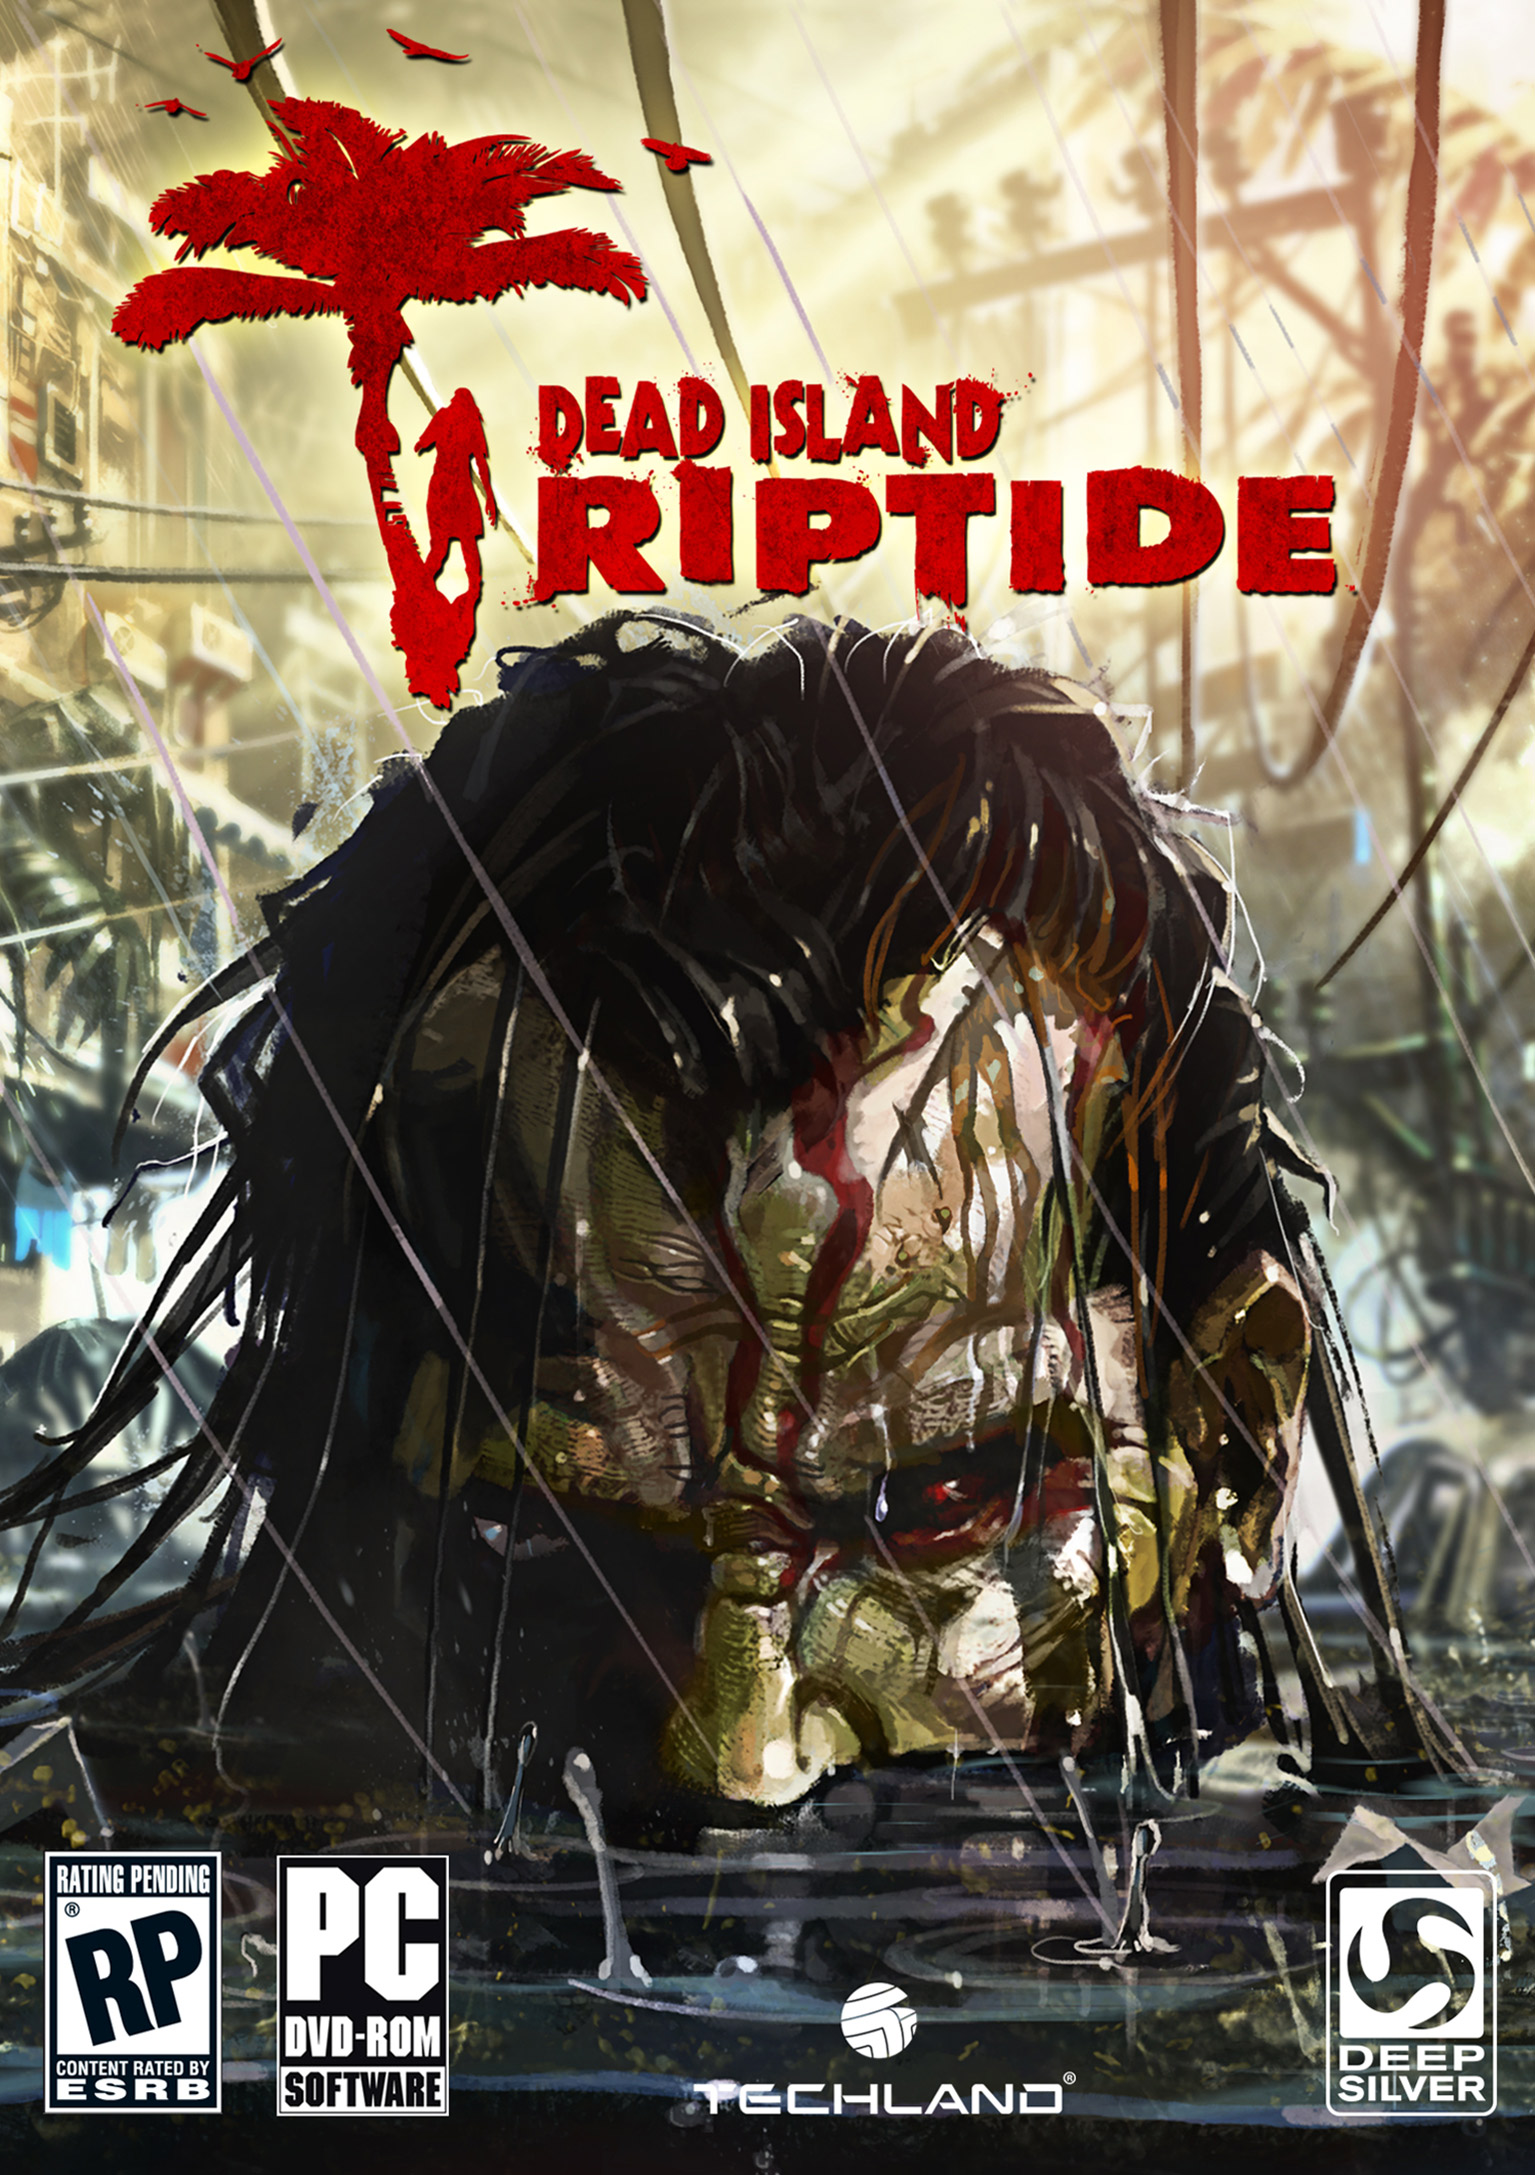 Dead island reptide. Dead Island Riptide Xbox 360 коробка. Деад Исланд на хбокс 360.